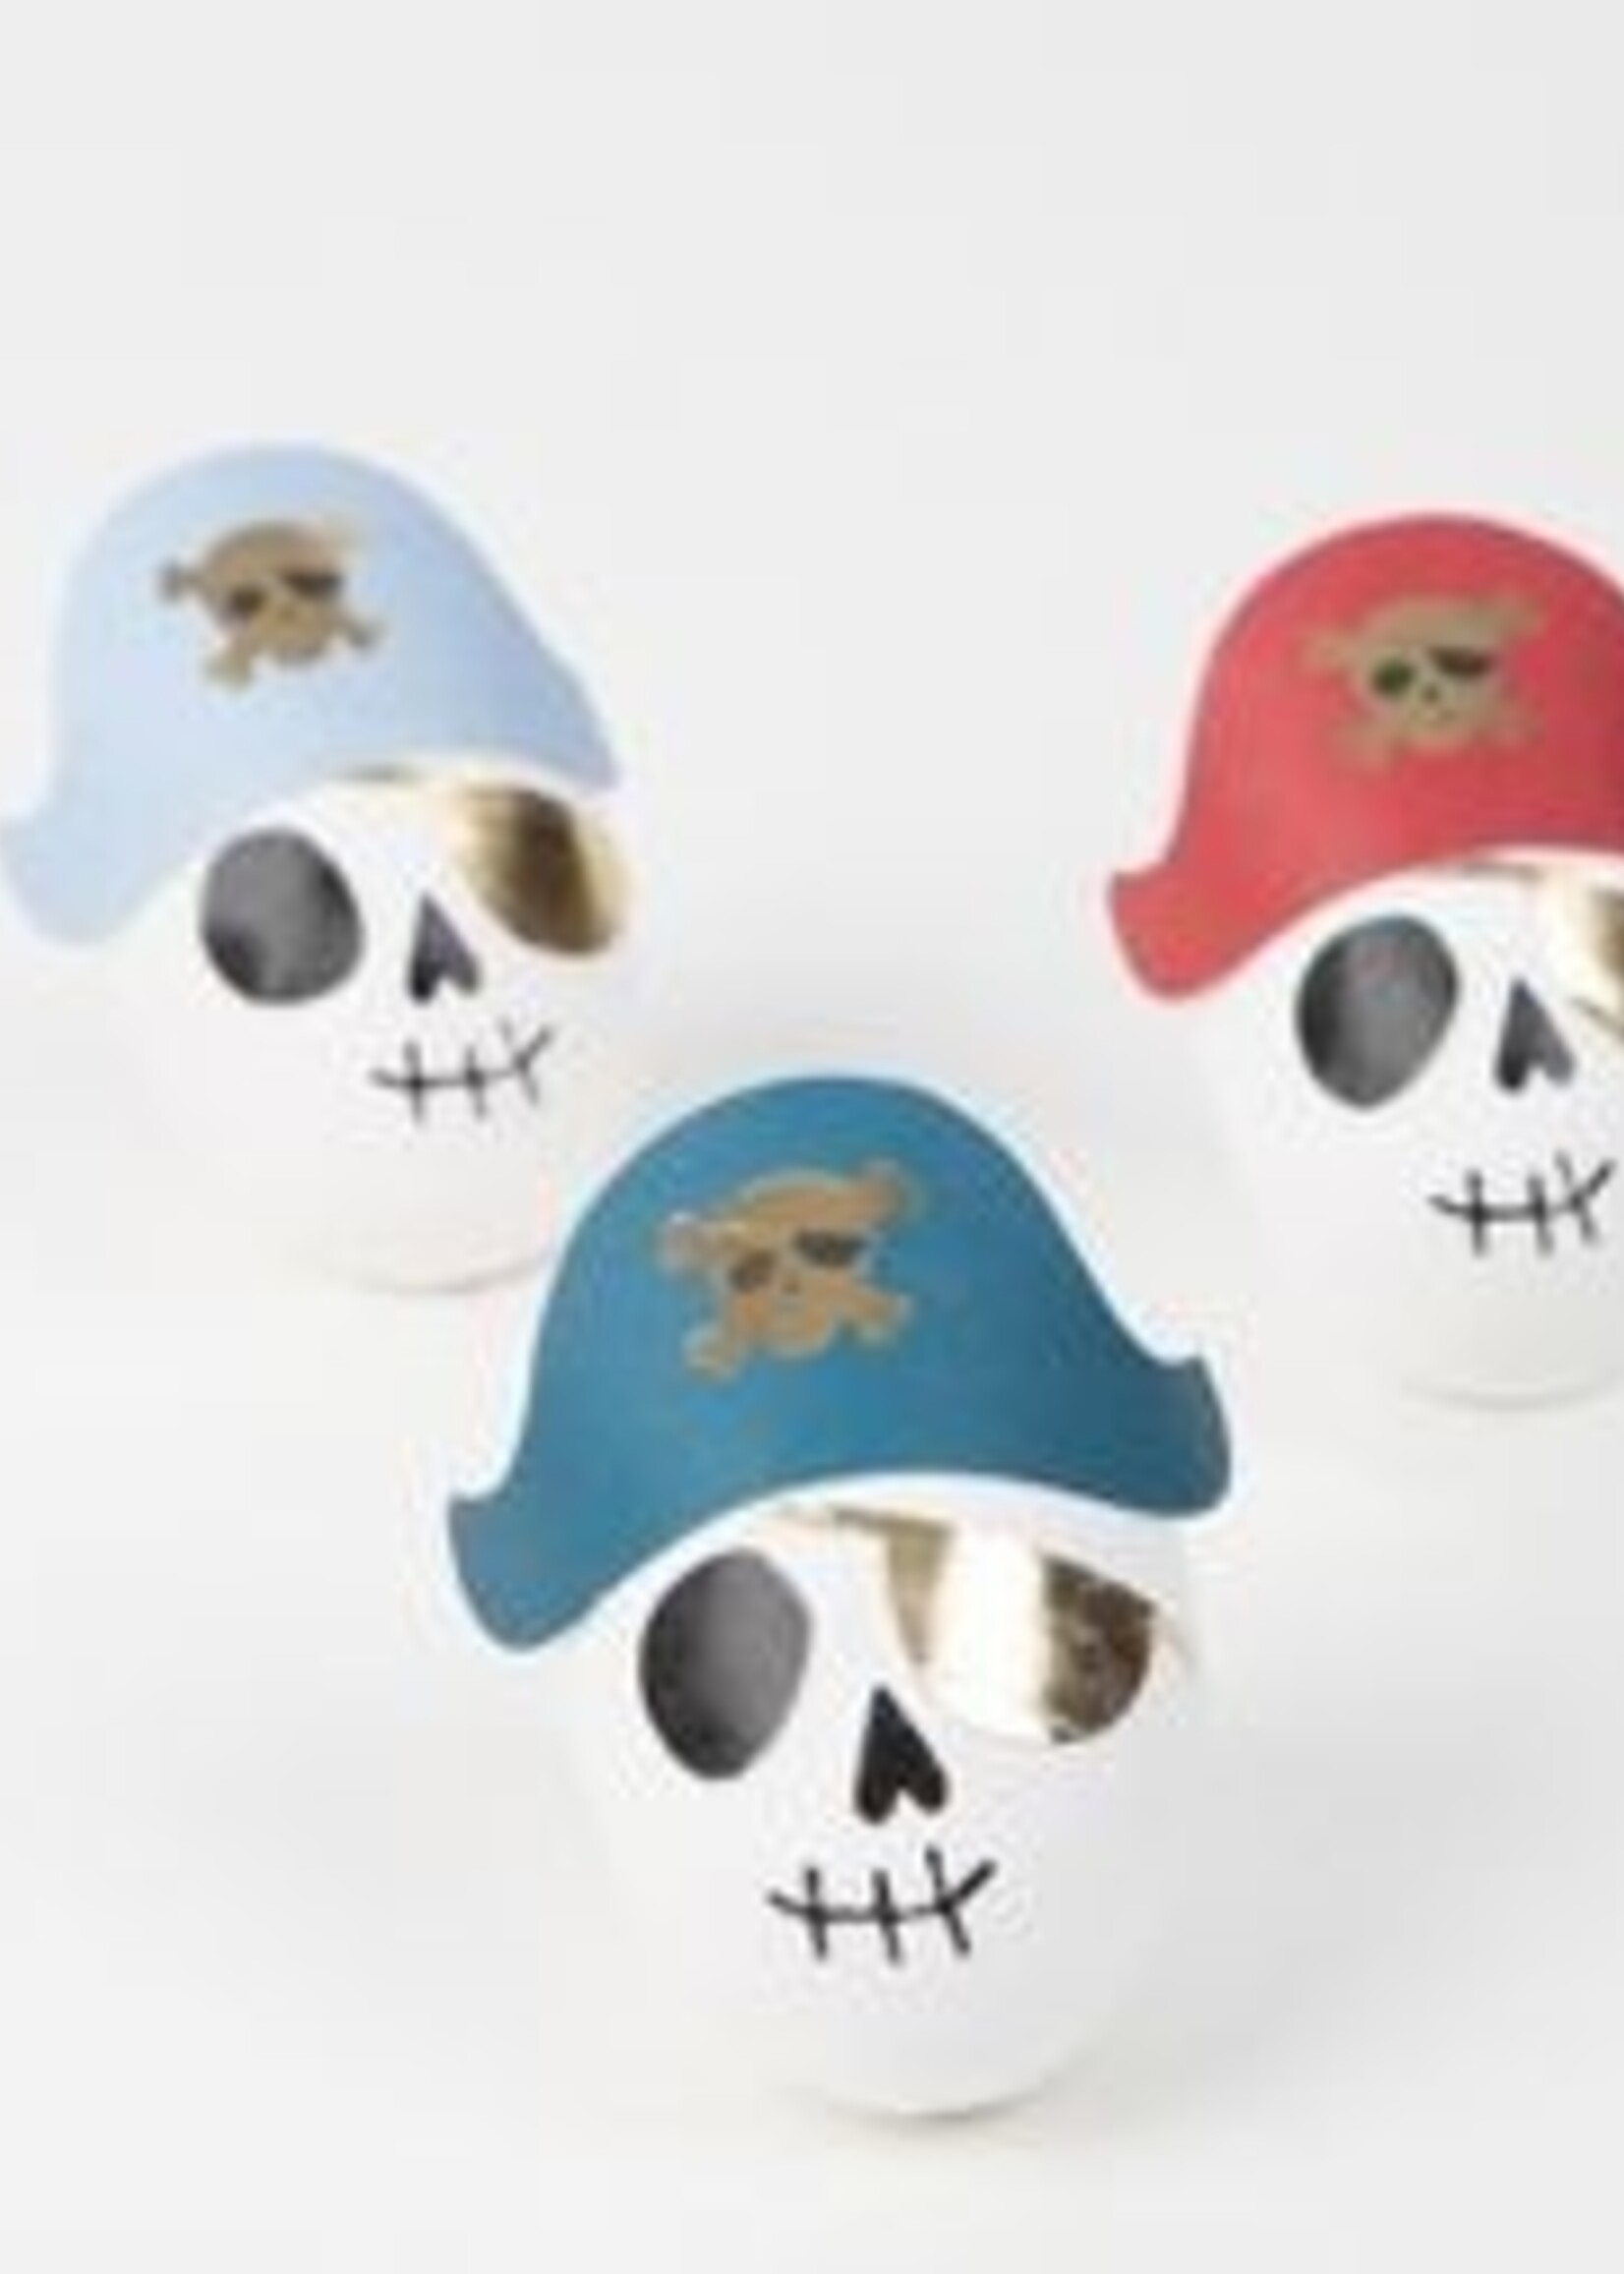 Meri Meri Pirate Skulls Surprise Balls